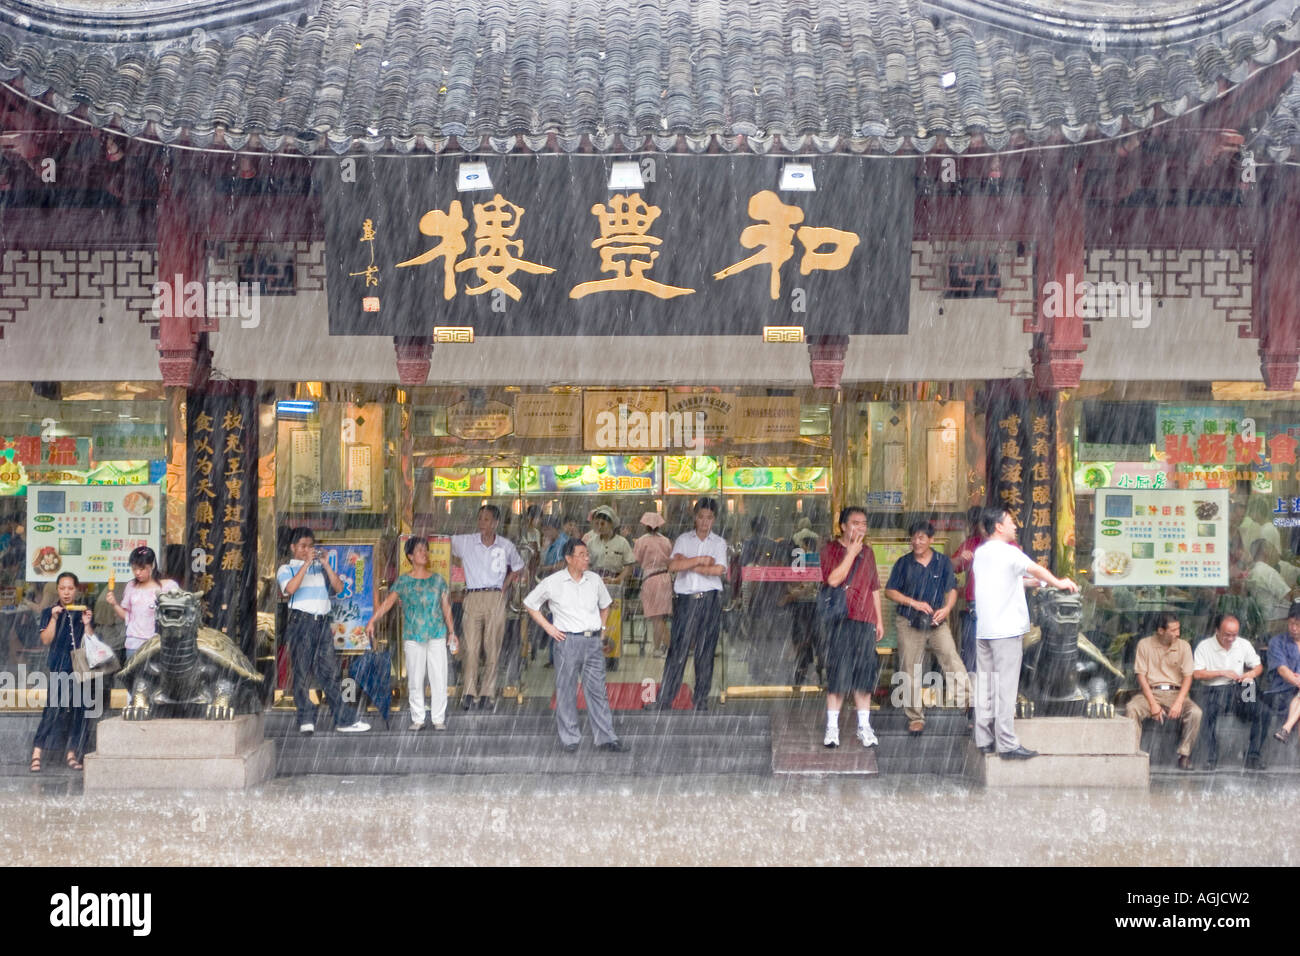 asia china shanghai rainy day in a shopping center near yuyuan garden Stock Photo